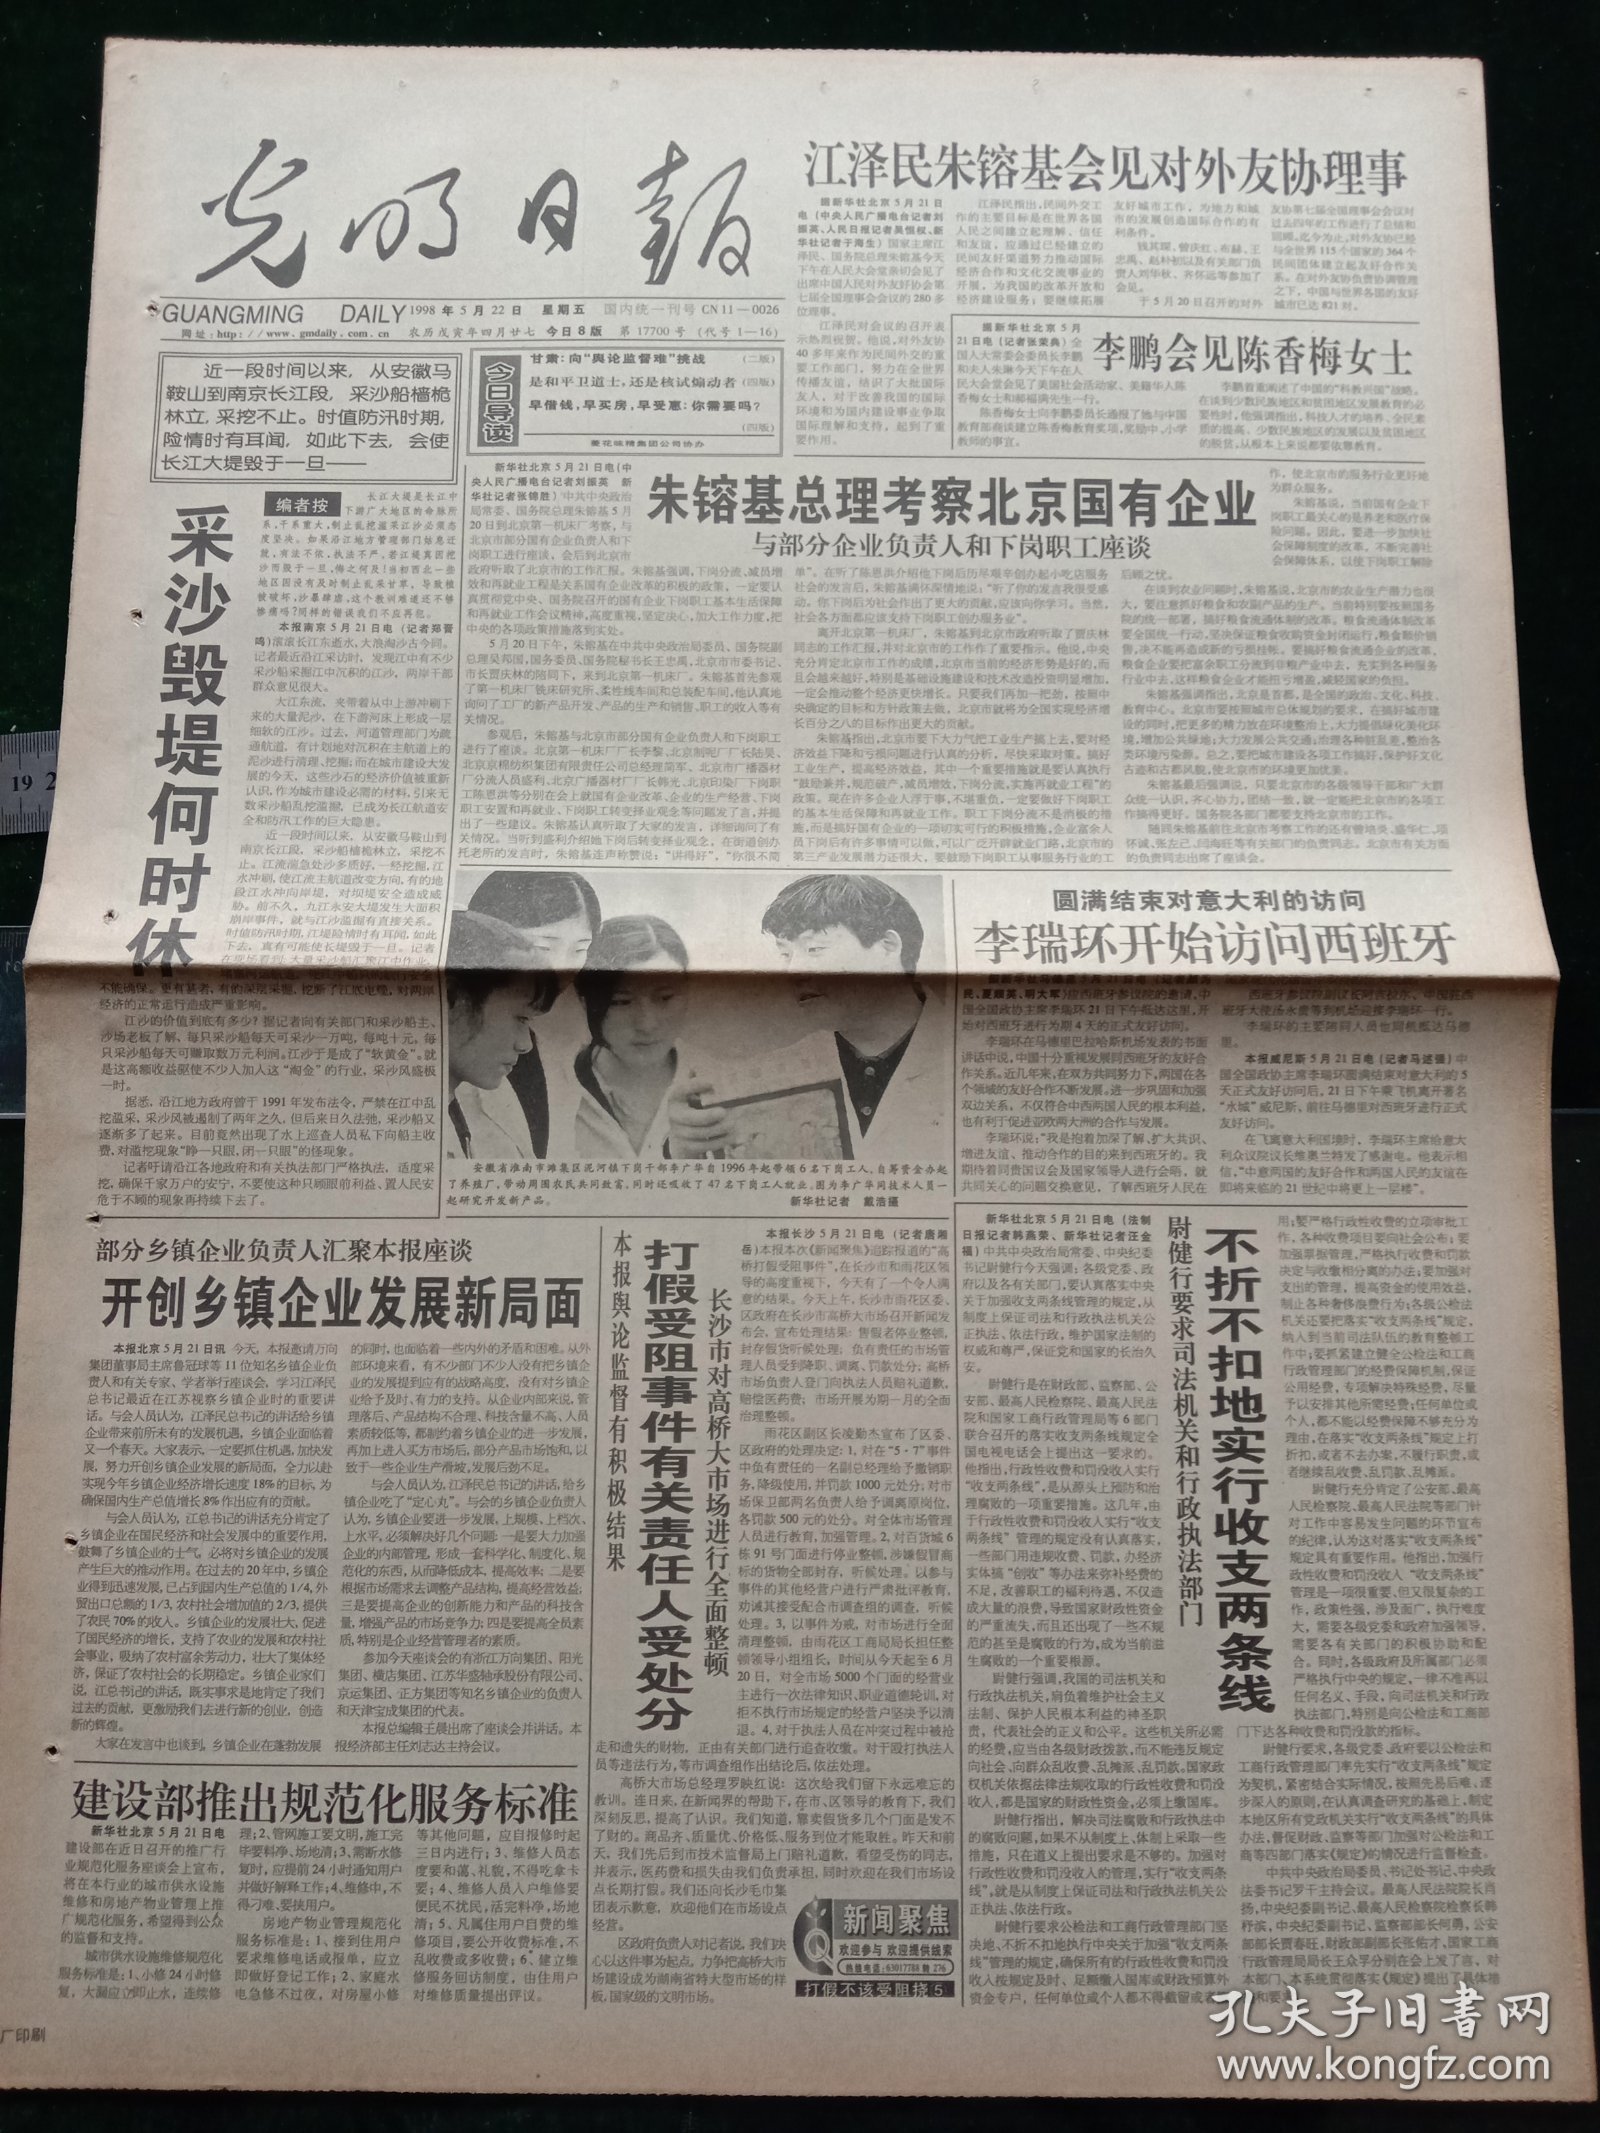 光明日报，1998年5月22日福州纪念建城2200周年；杨西光与真理标准讨论，其它详情见图，对开八版。